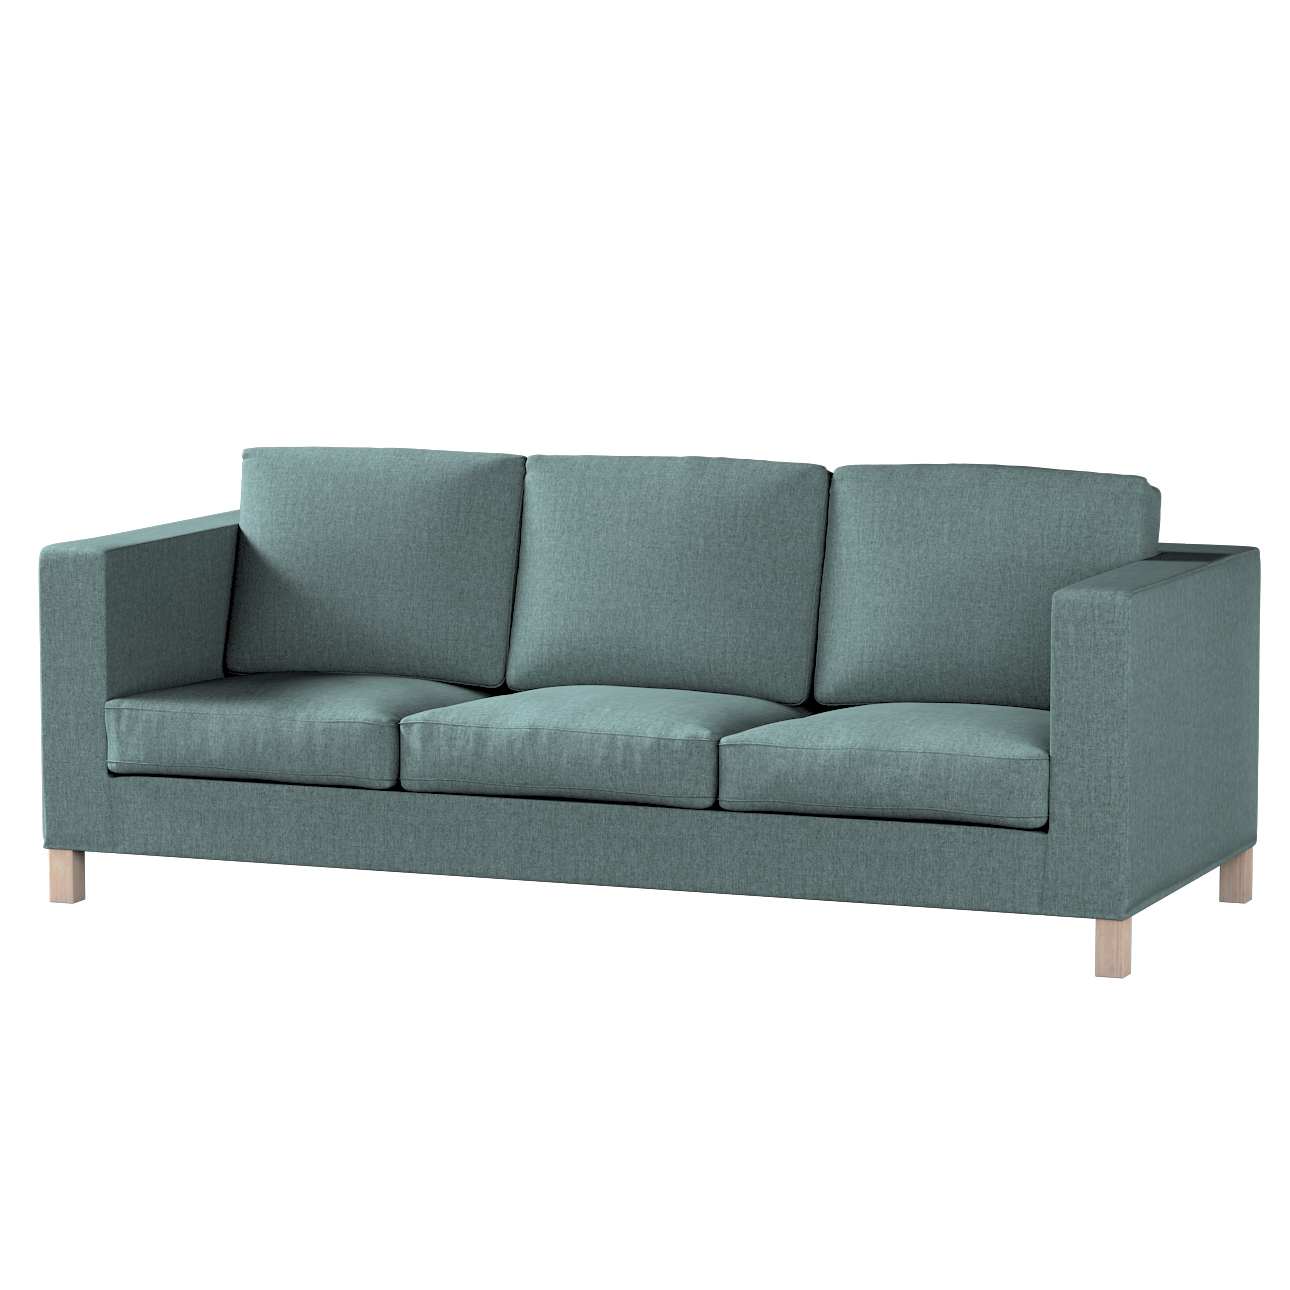 Bezug für Karlanda 3-Sitzer Sofa nicht ausklappbar, kurz, grau- blau, Bezug günstig online kaufen